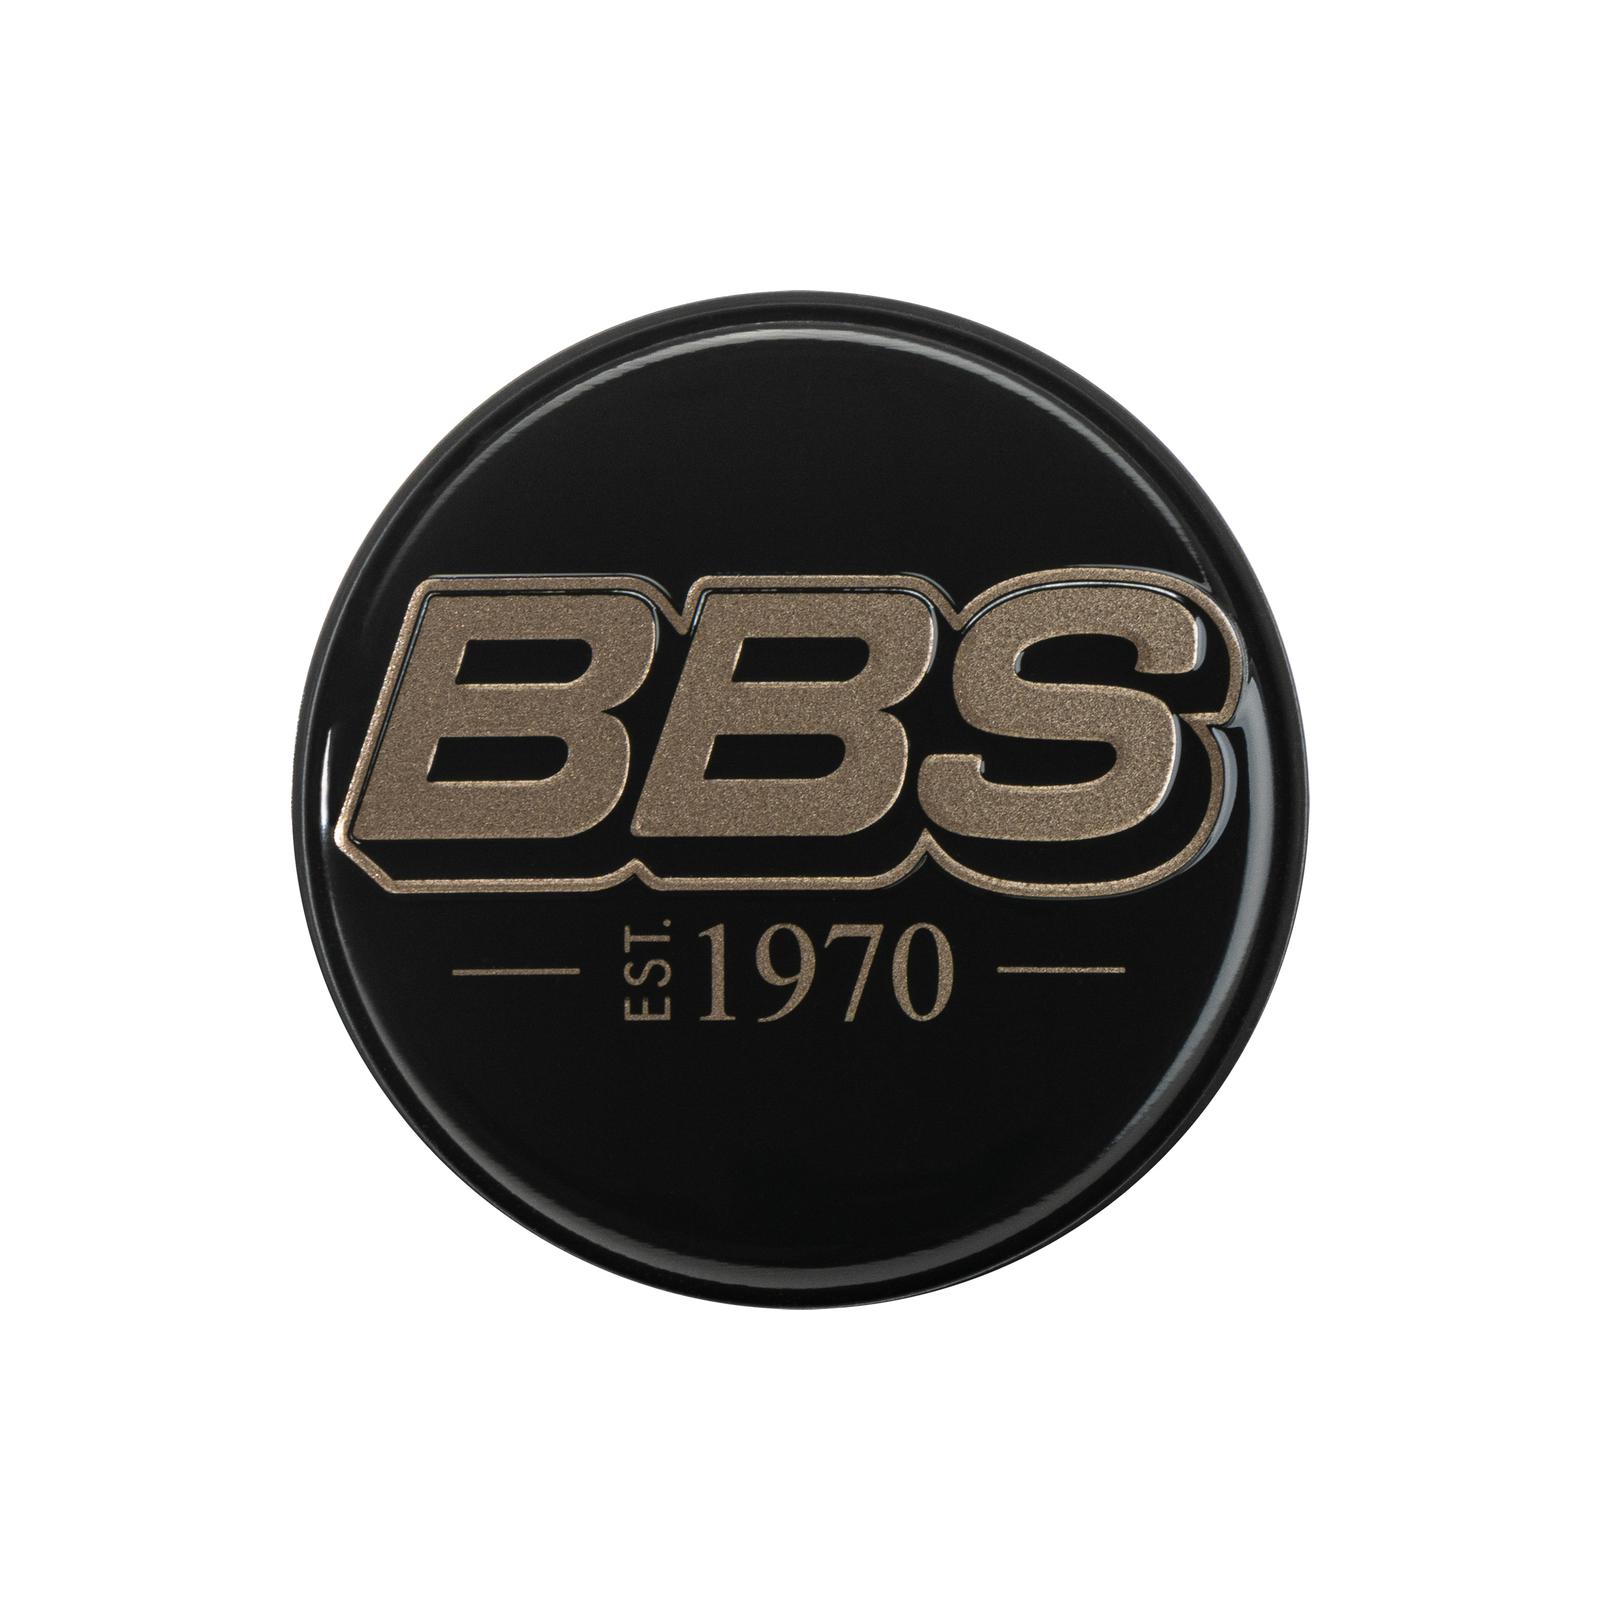 BBS 2D Nabendeckel est. 1970 geprägt schwarz mit Logo bronze Ø56mm